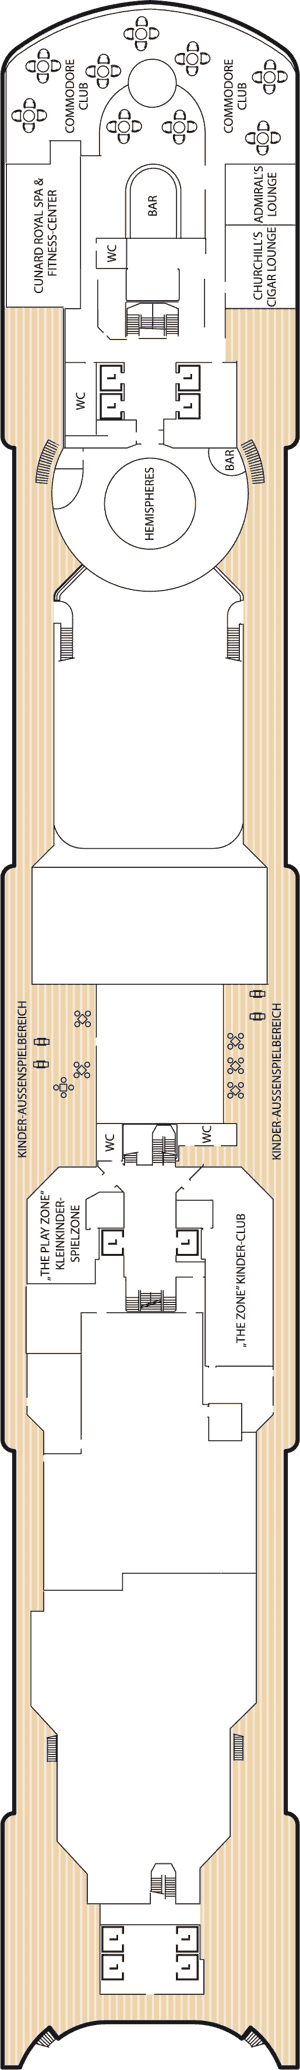 Queen Victoria - Decksplan Deck 10